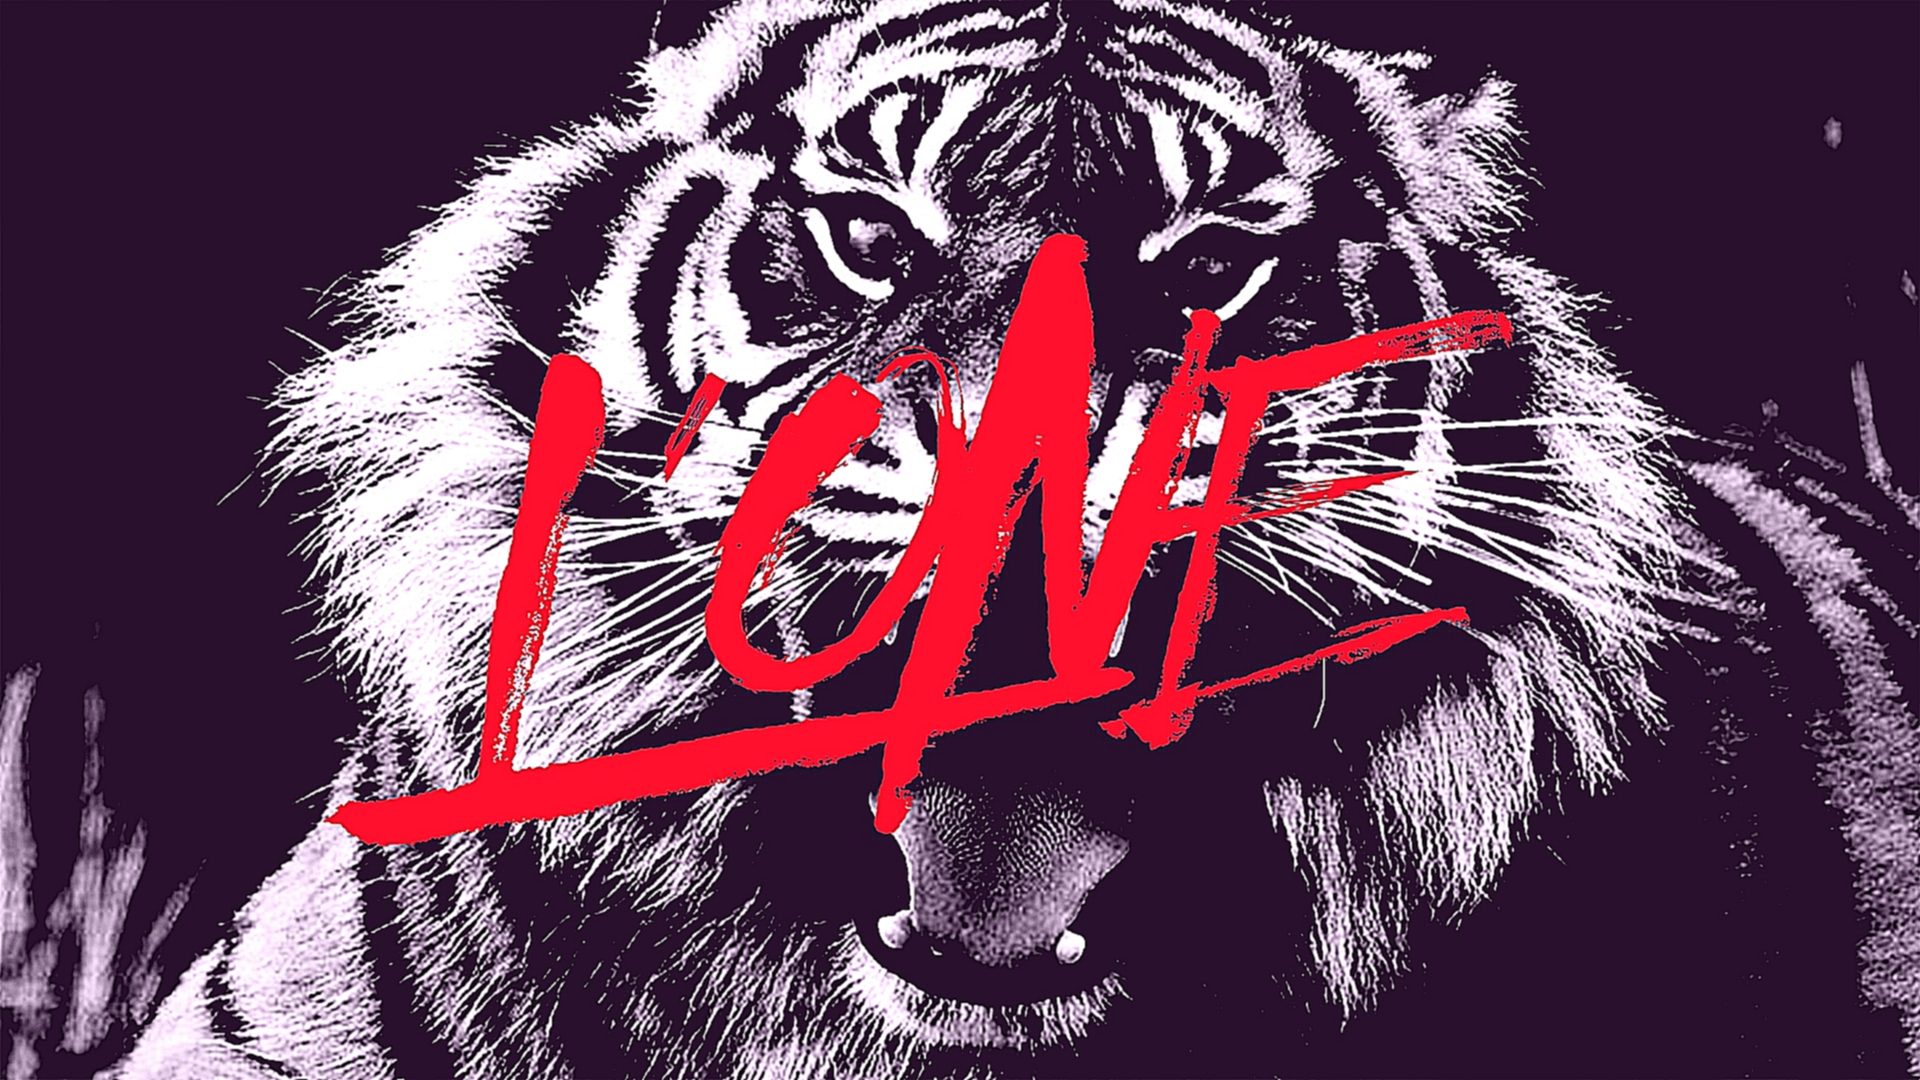 L'ONE - Тигр (премьера клипа, 2016) - видеоклип на песню